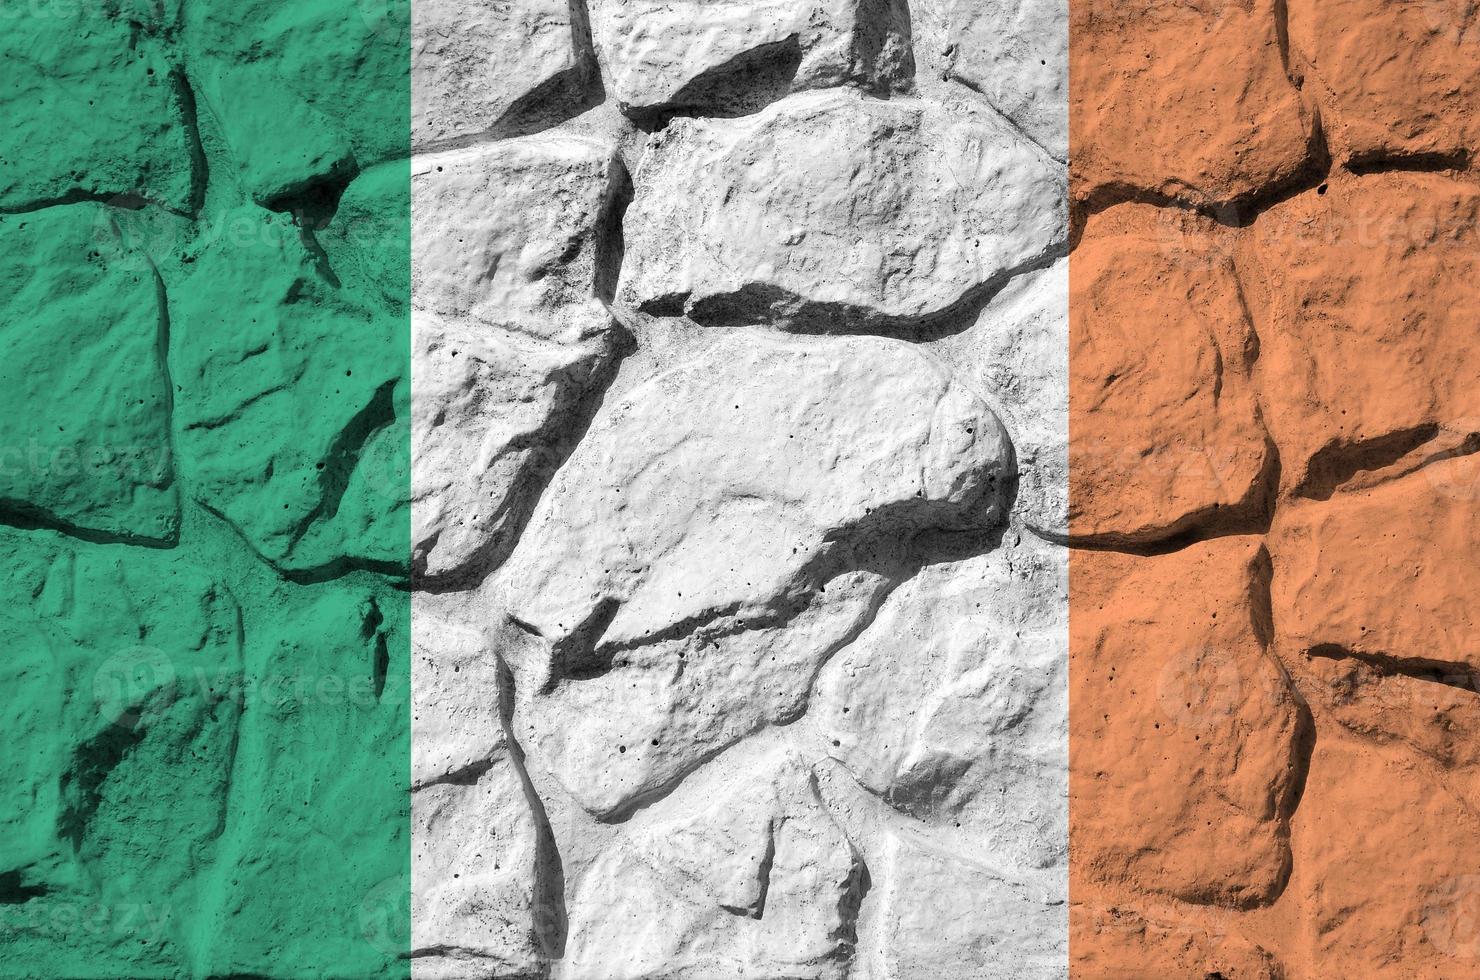 irland flagga avbildad i måla färger på gammal sten vägg närbild. texturerad baner på sten vägg bakgrund foto